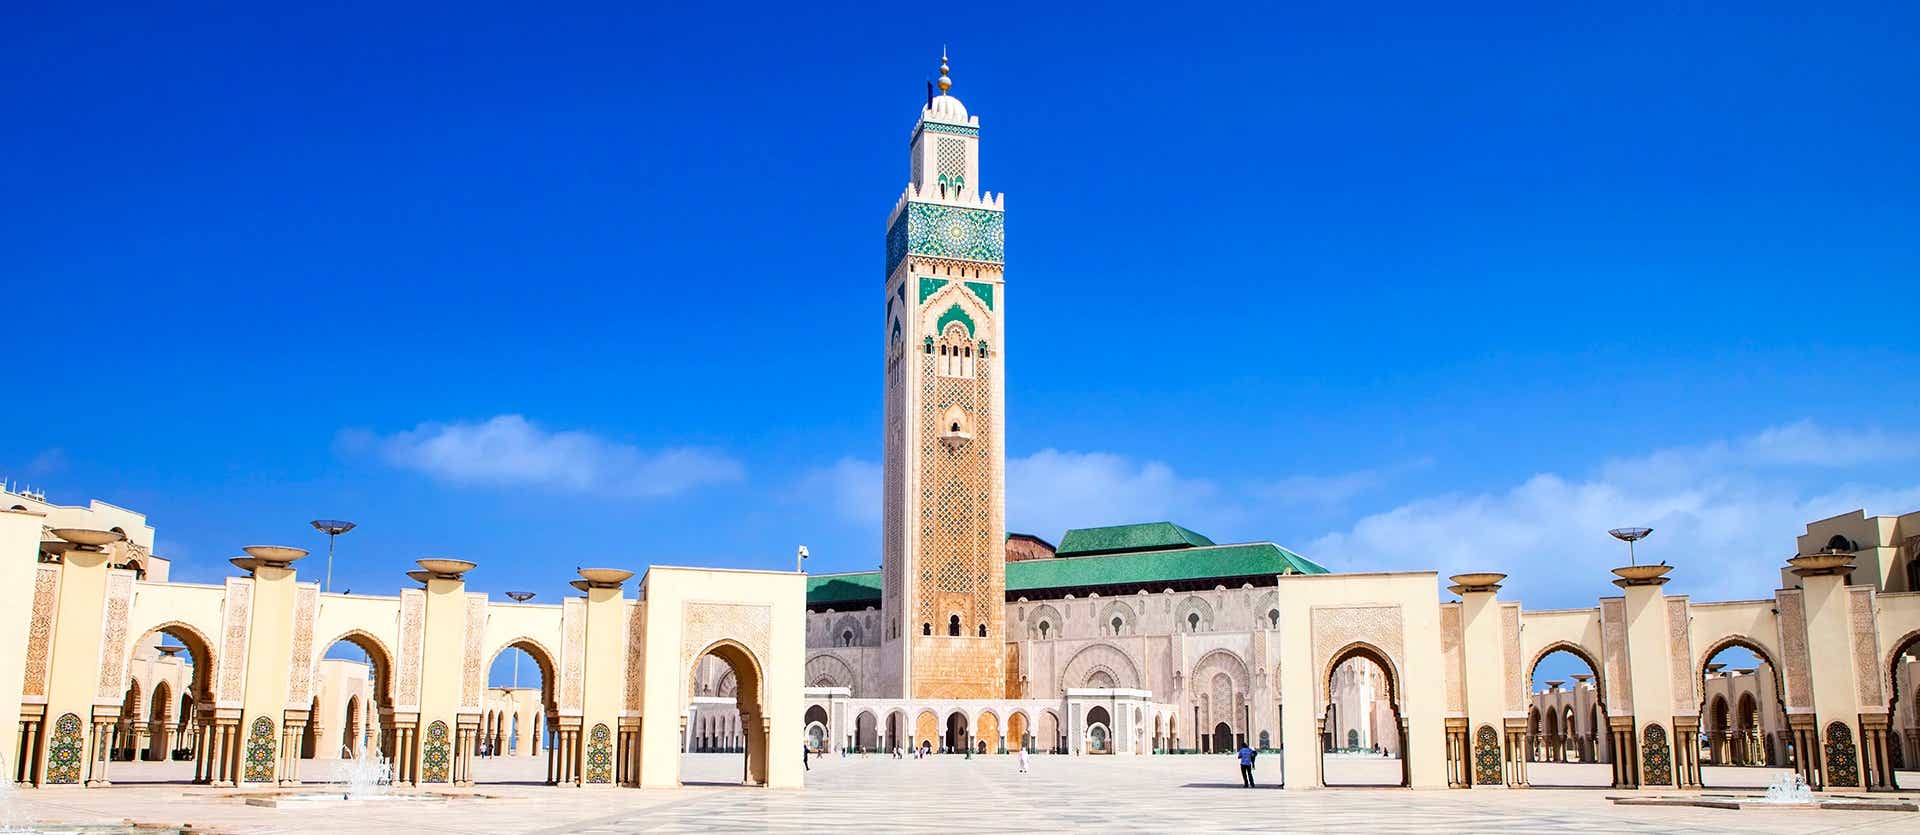 Hassan II Mosque <span class="iconos separador"></span> Casablanca 